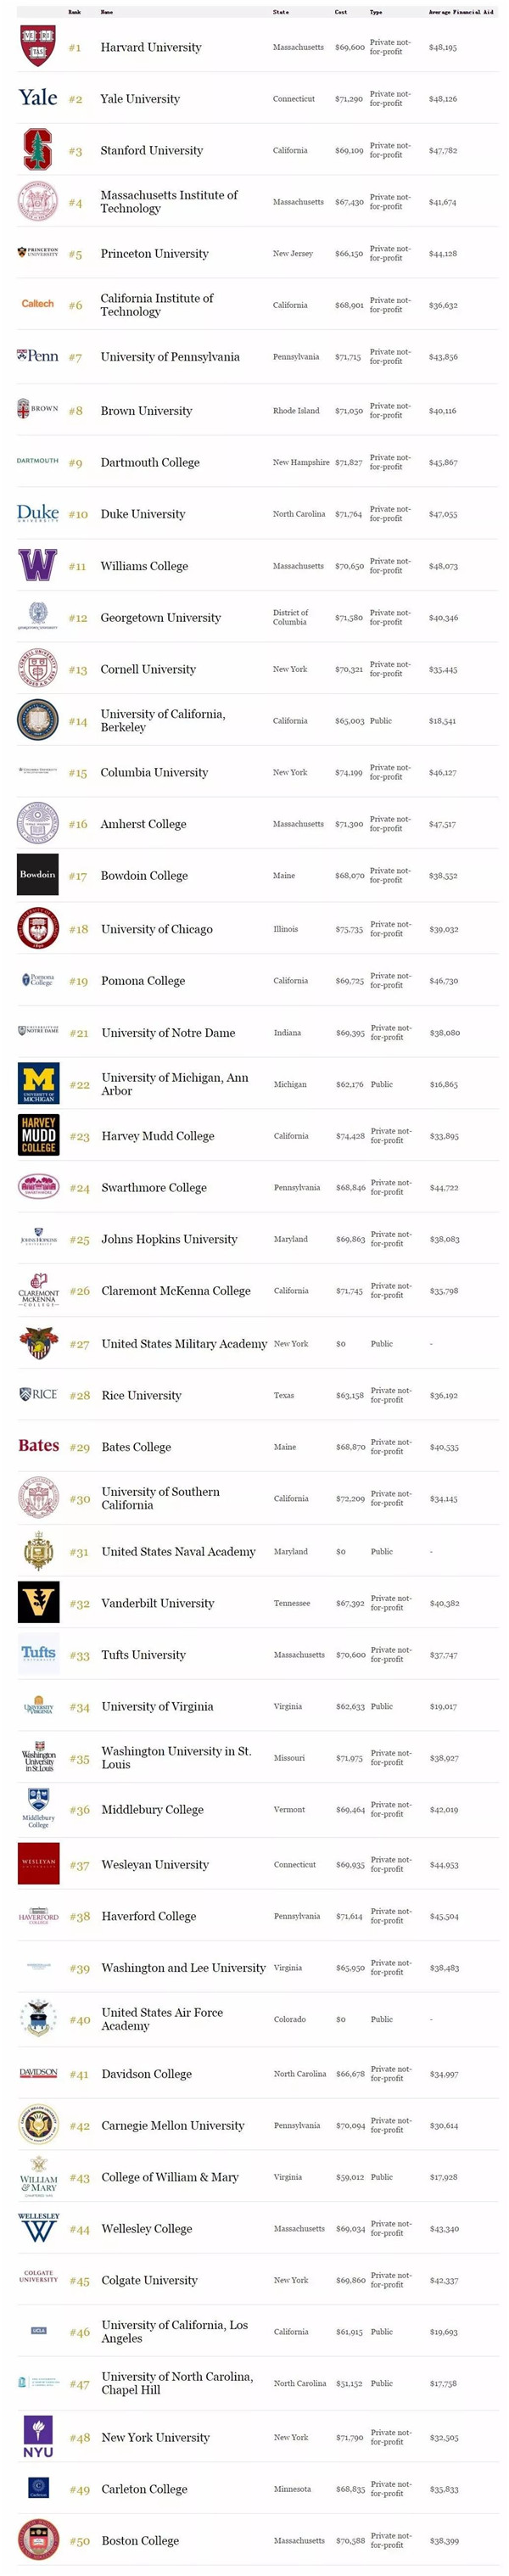 福布斯2018年全美最佳大学排名出炉(TOP150)